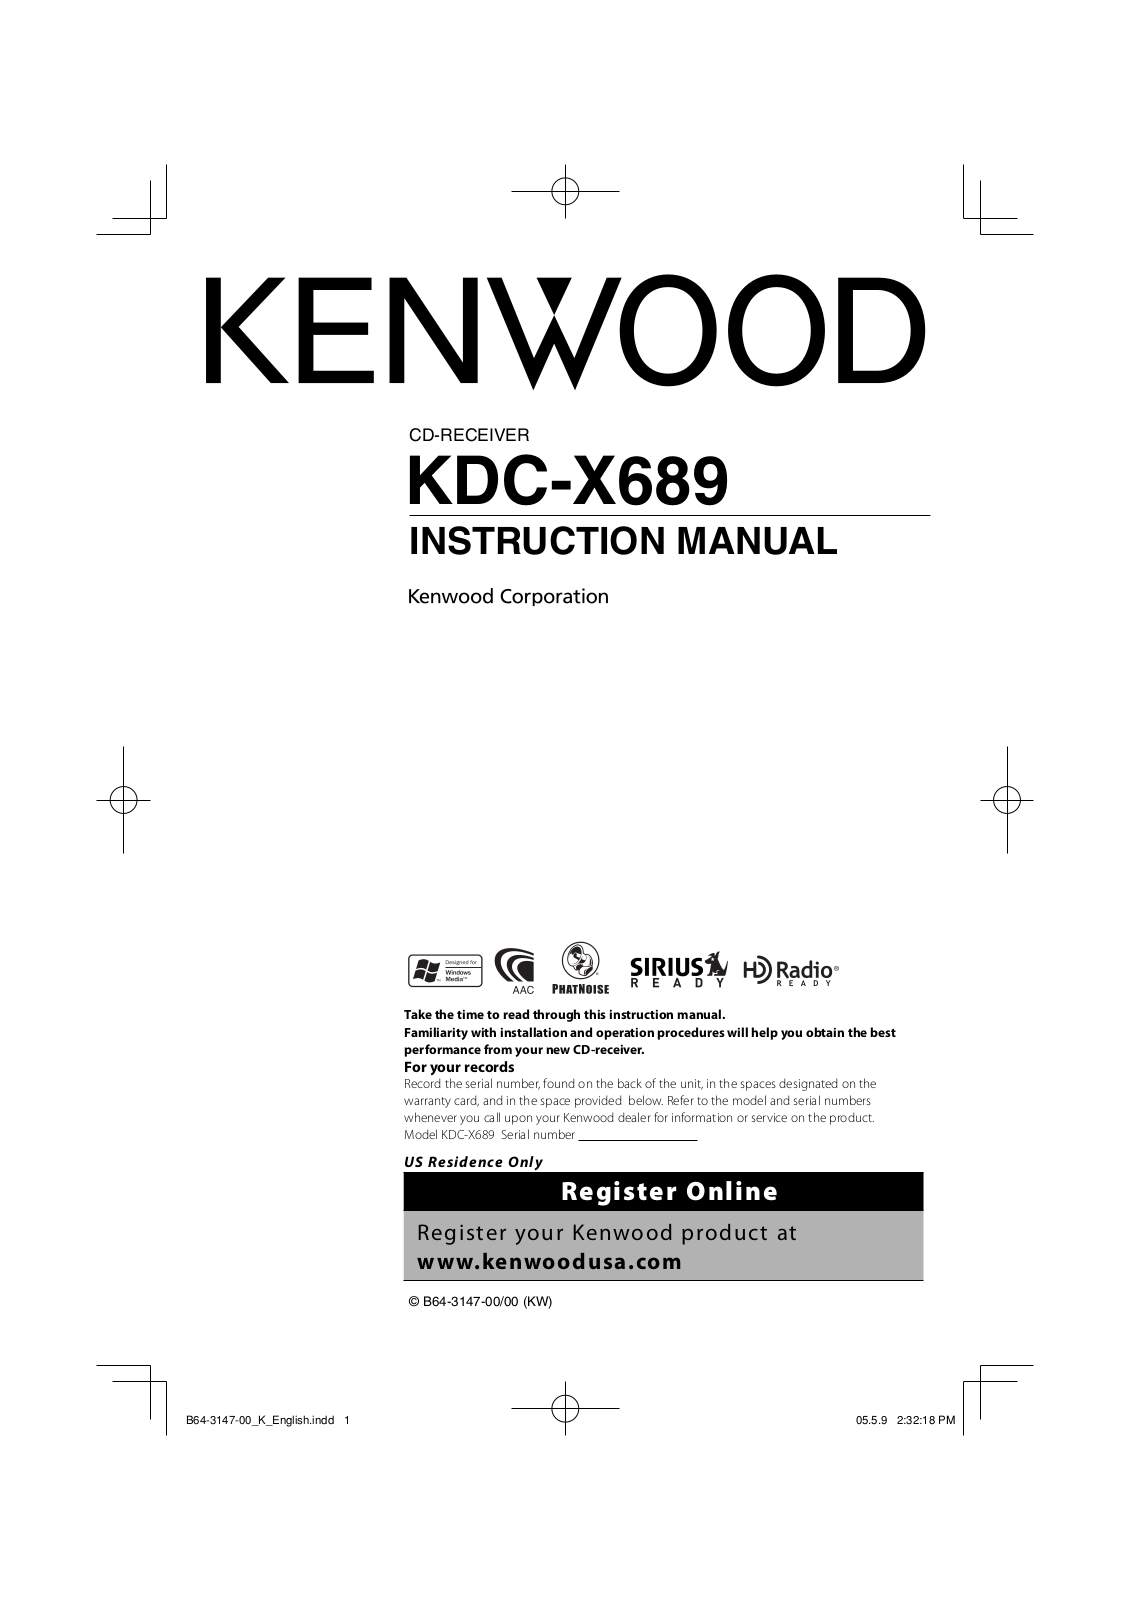 Kenwood KDC-X689 User Manual